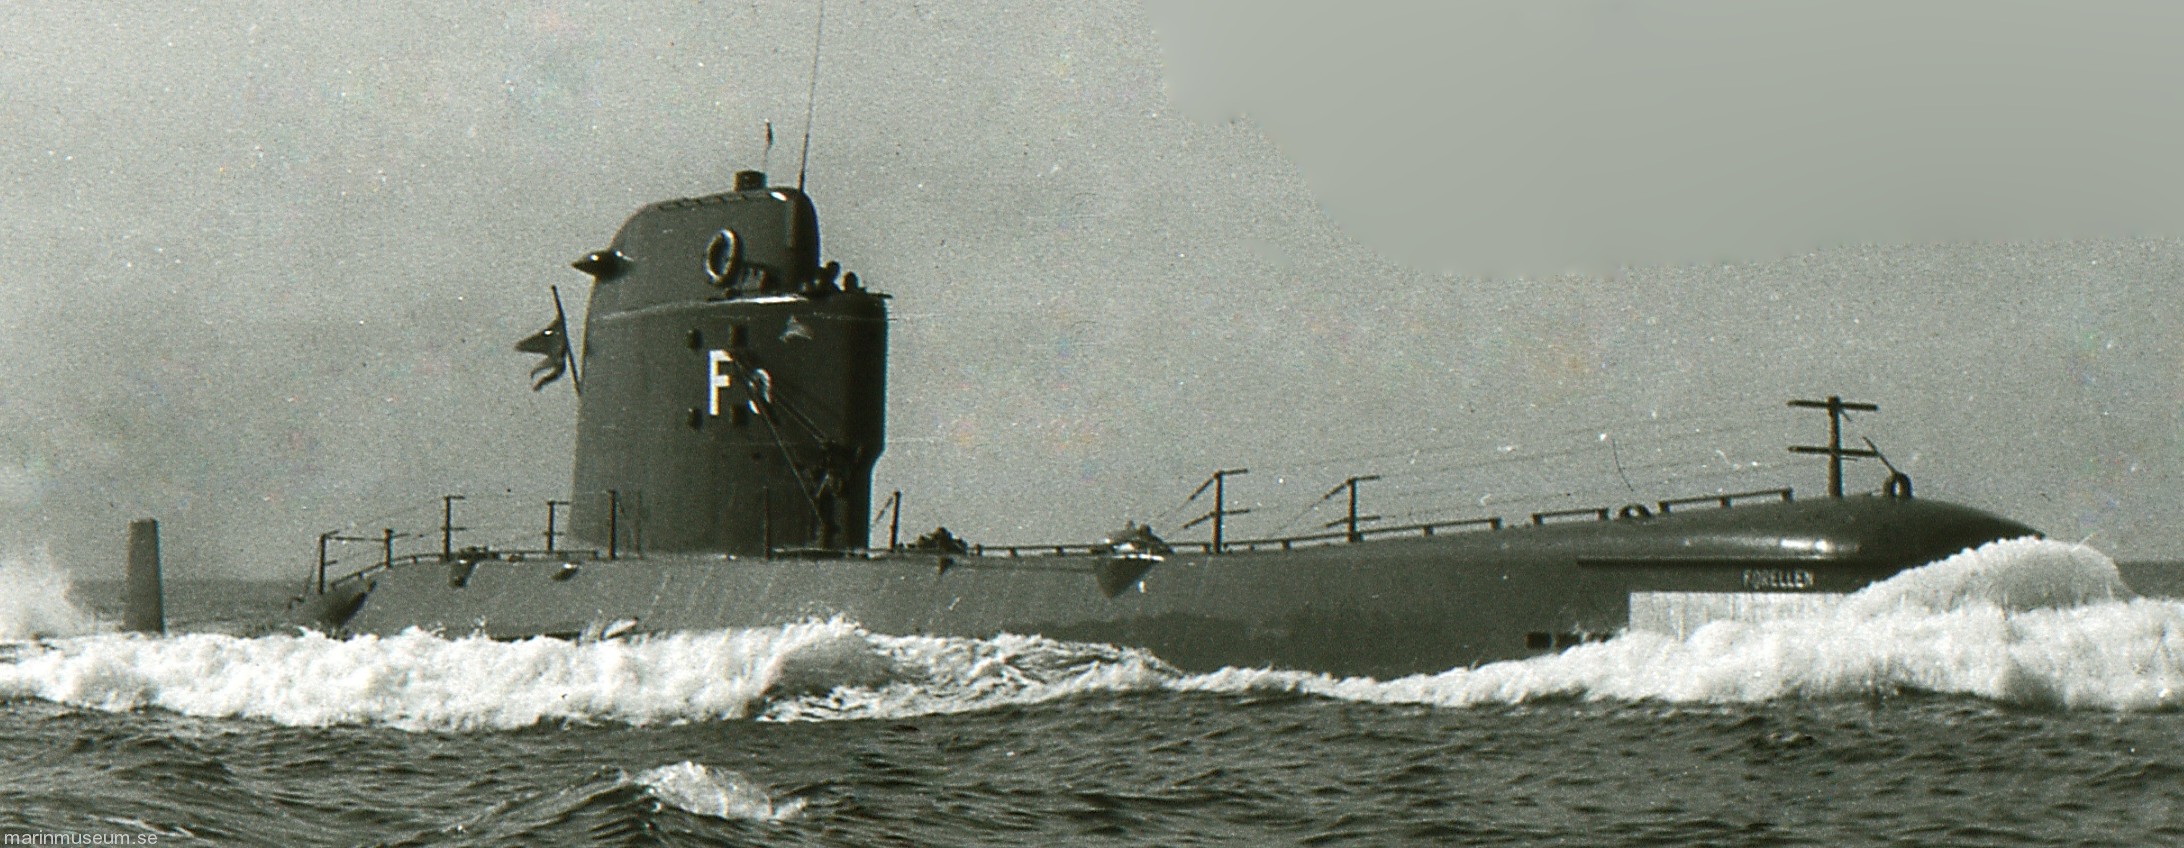 hms hswms forellen aborren a13 class attack submarine ubåt swedish navy svenska marinen försvarsmakten 02